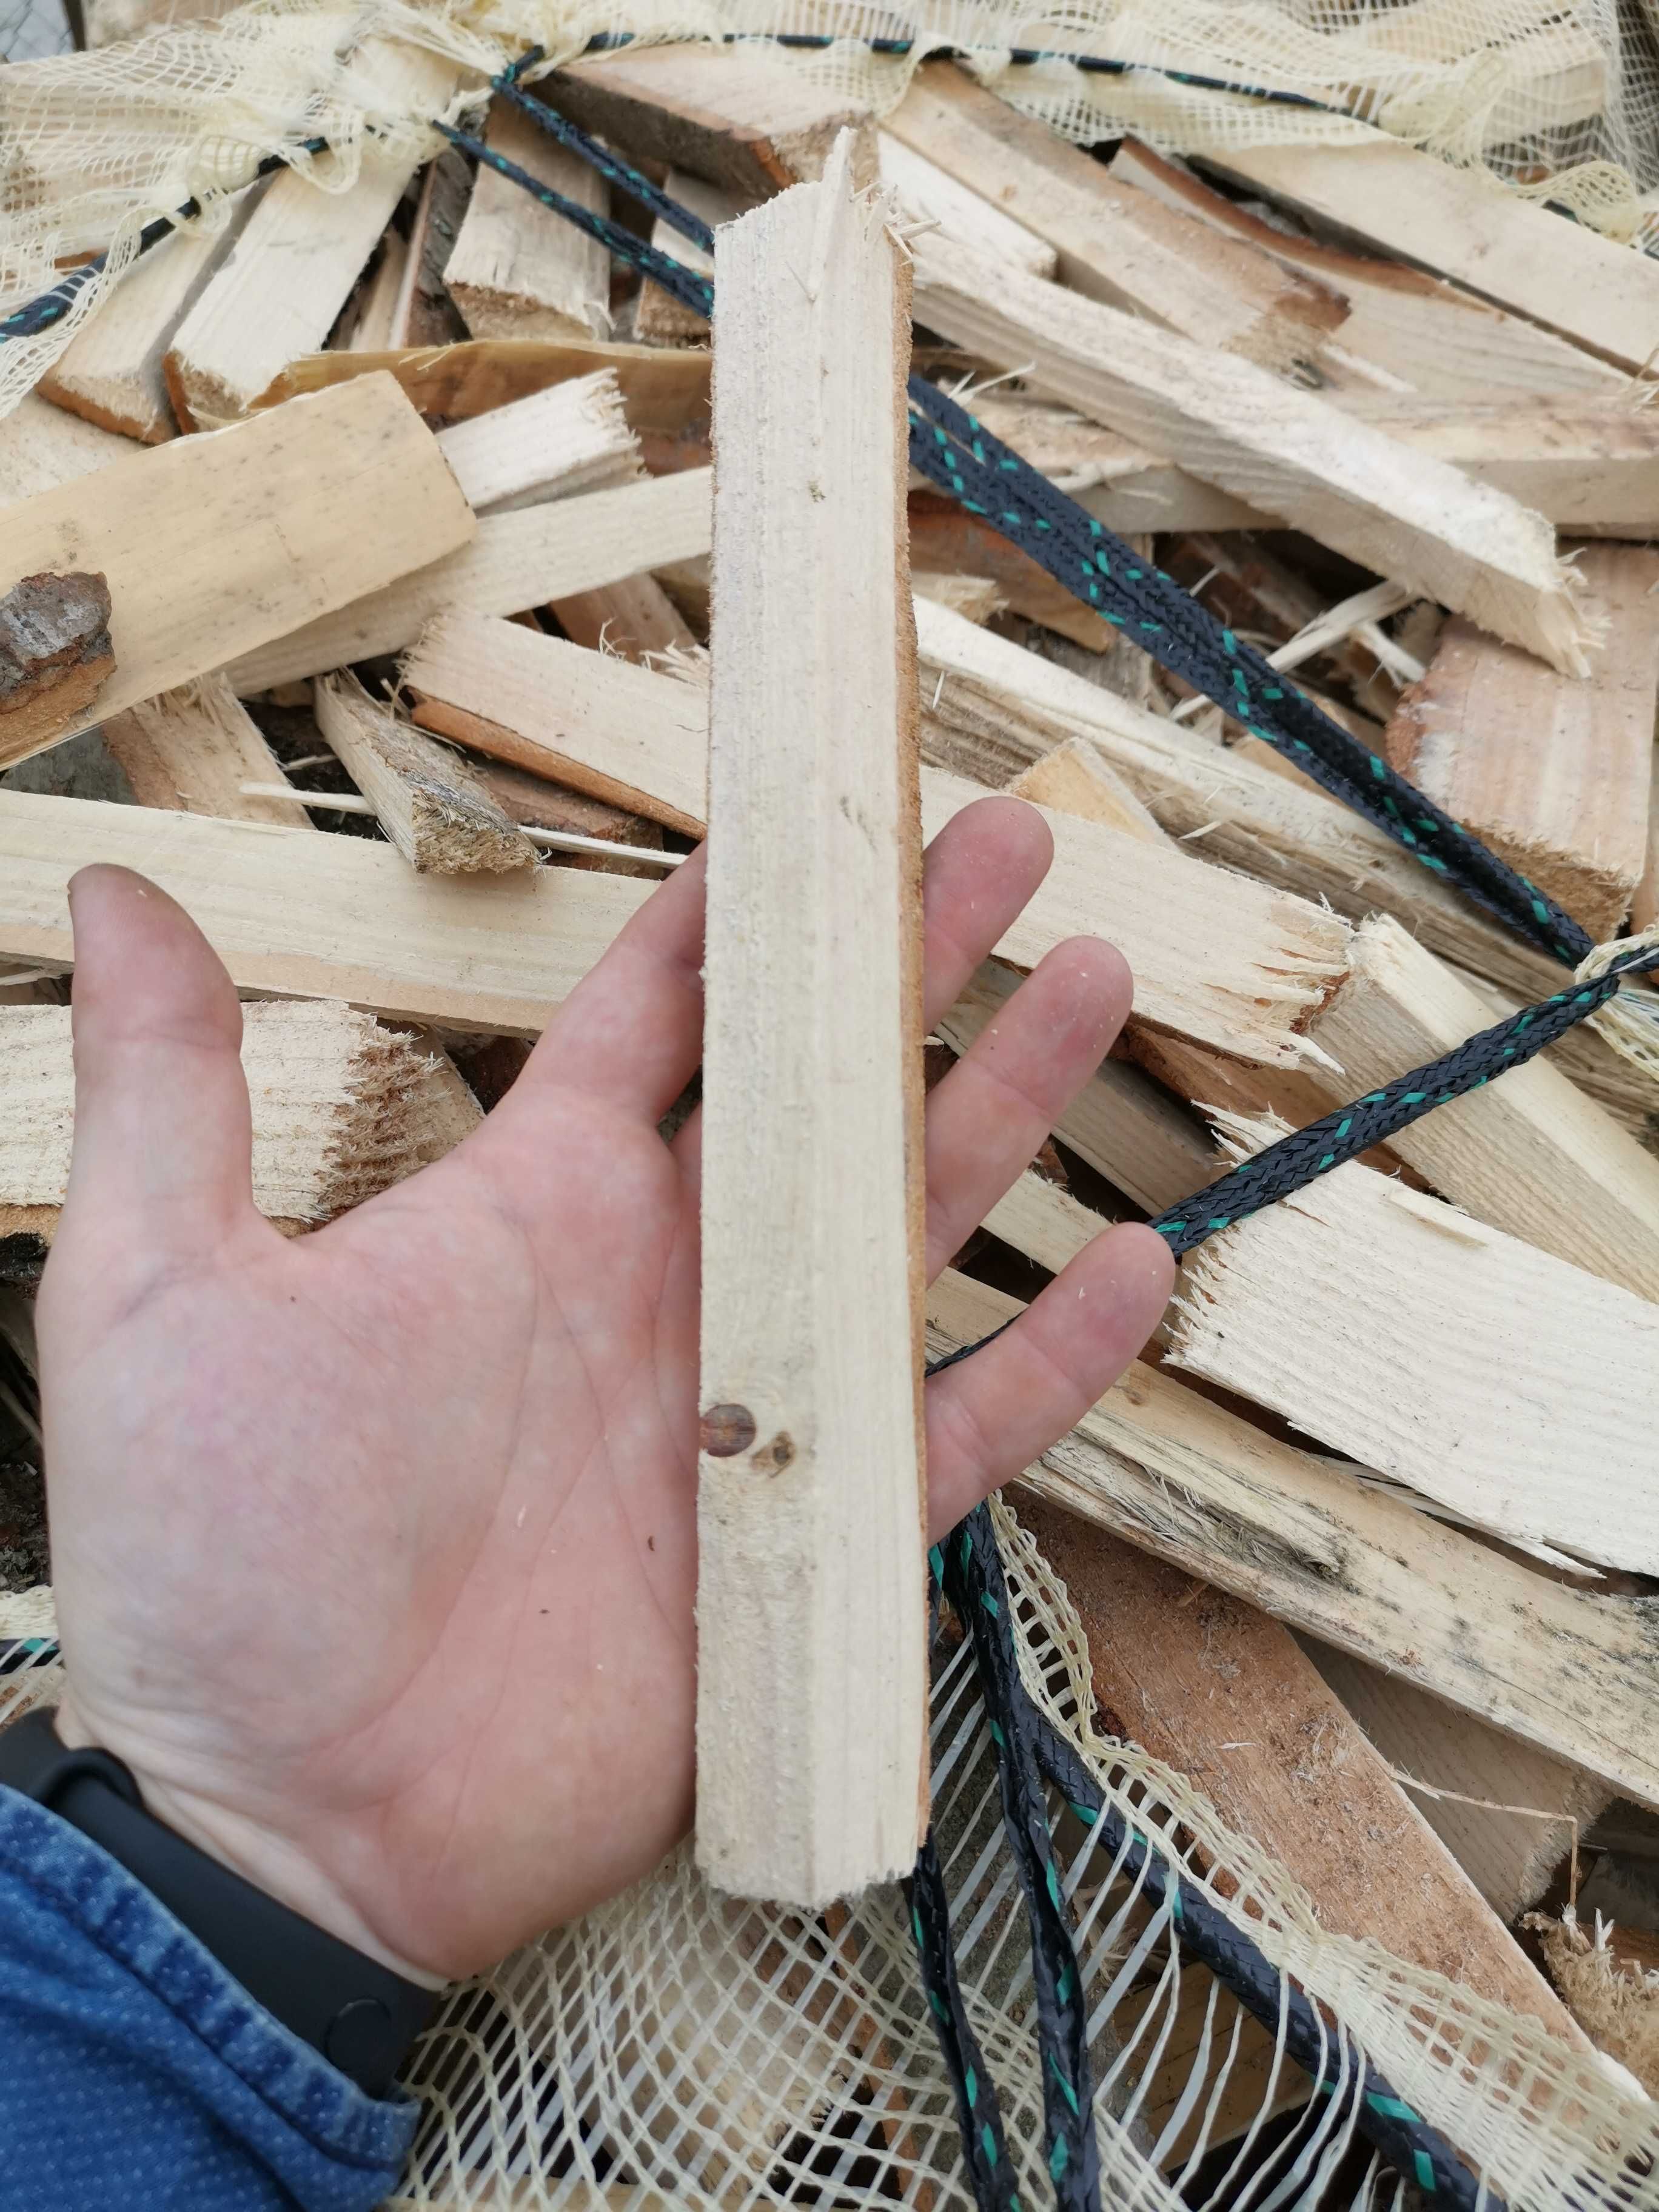 Drewno rozpałkowe - gotowa rozpałka z miękkiego drewna iglastego